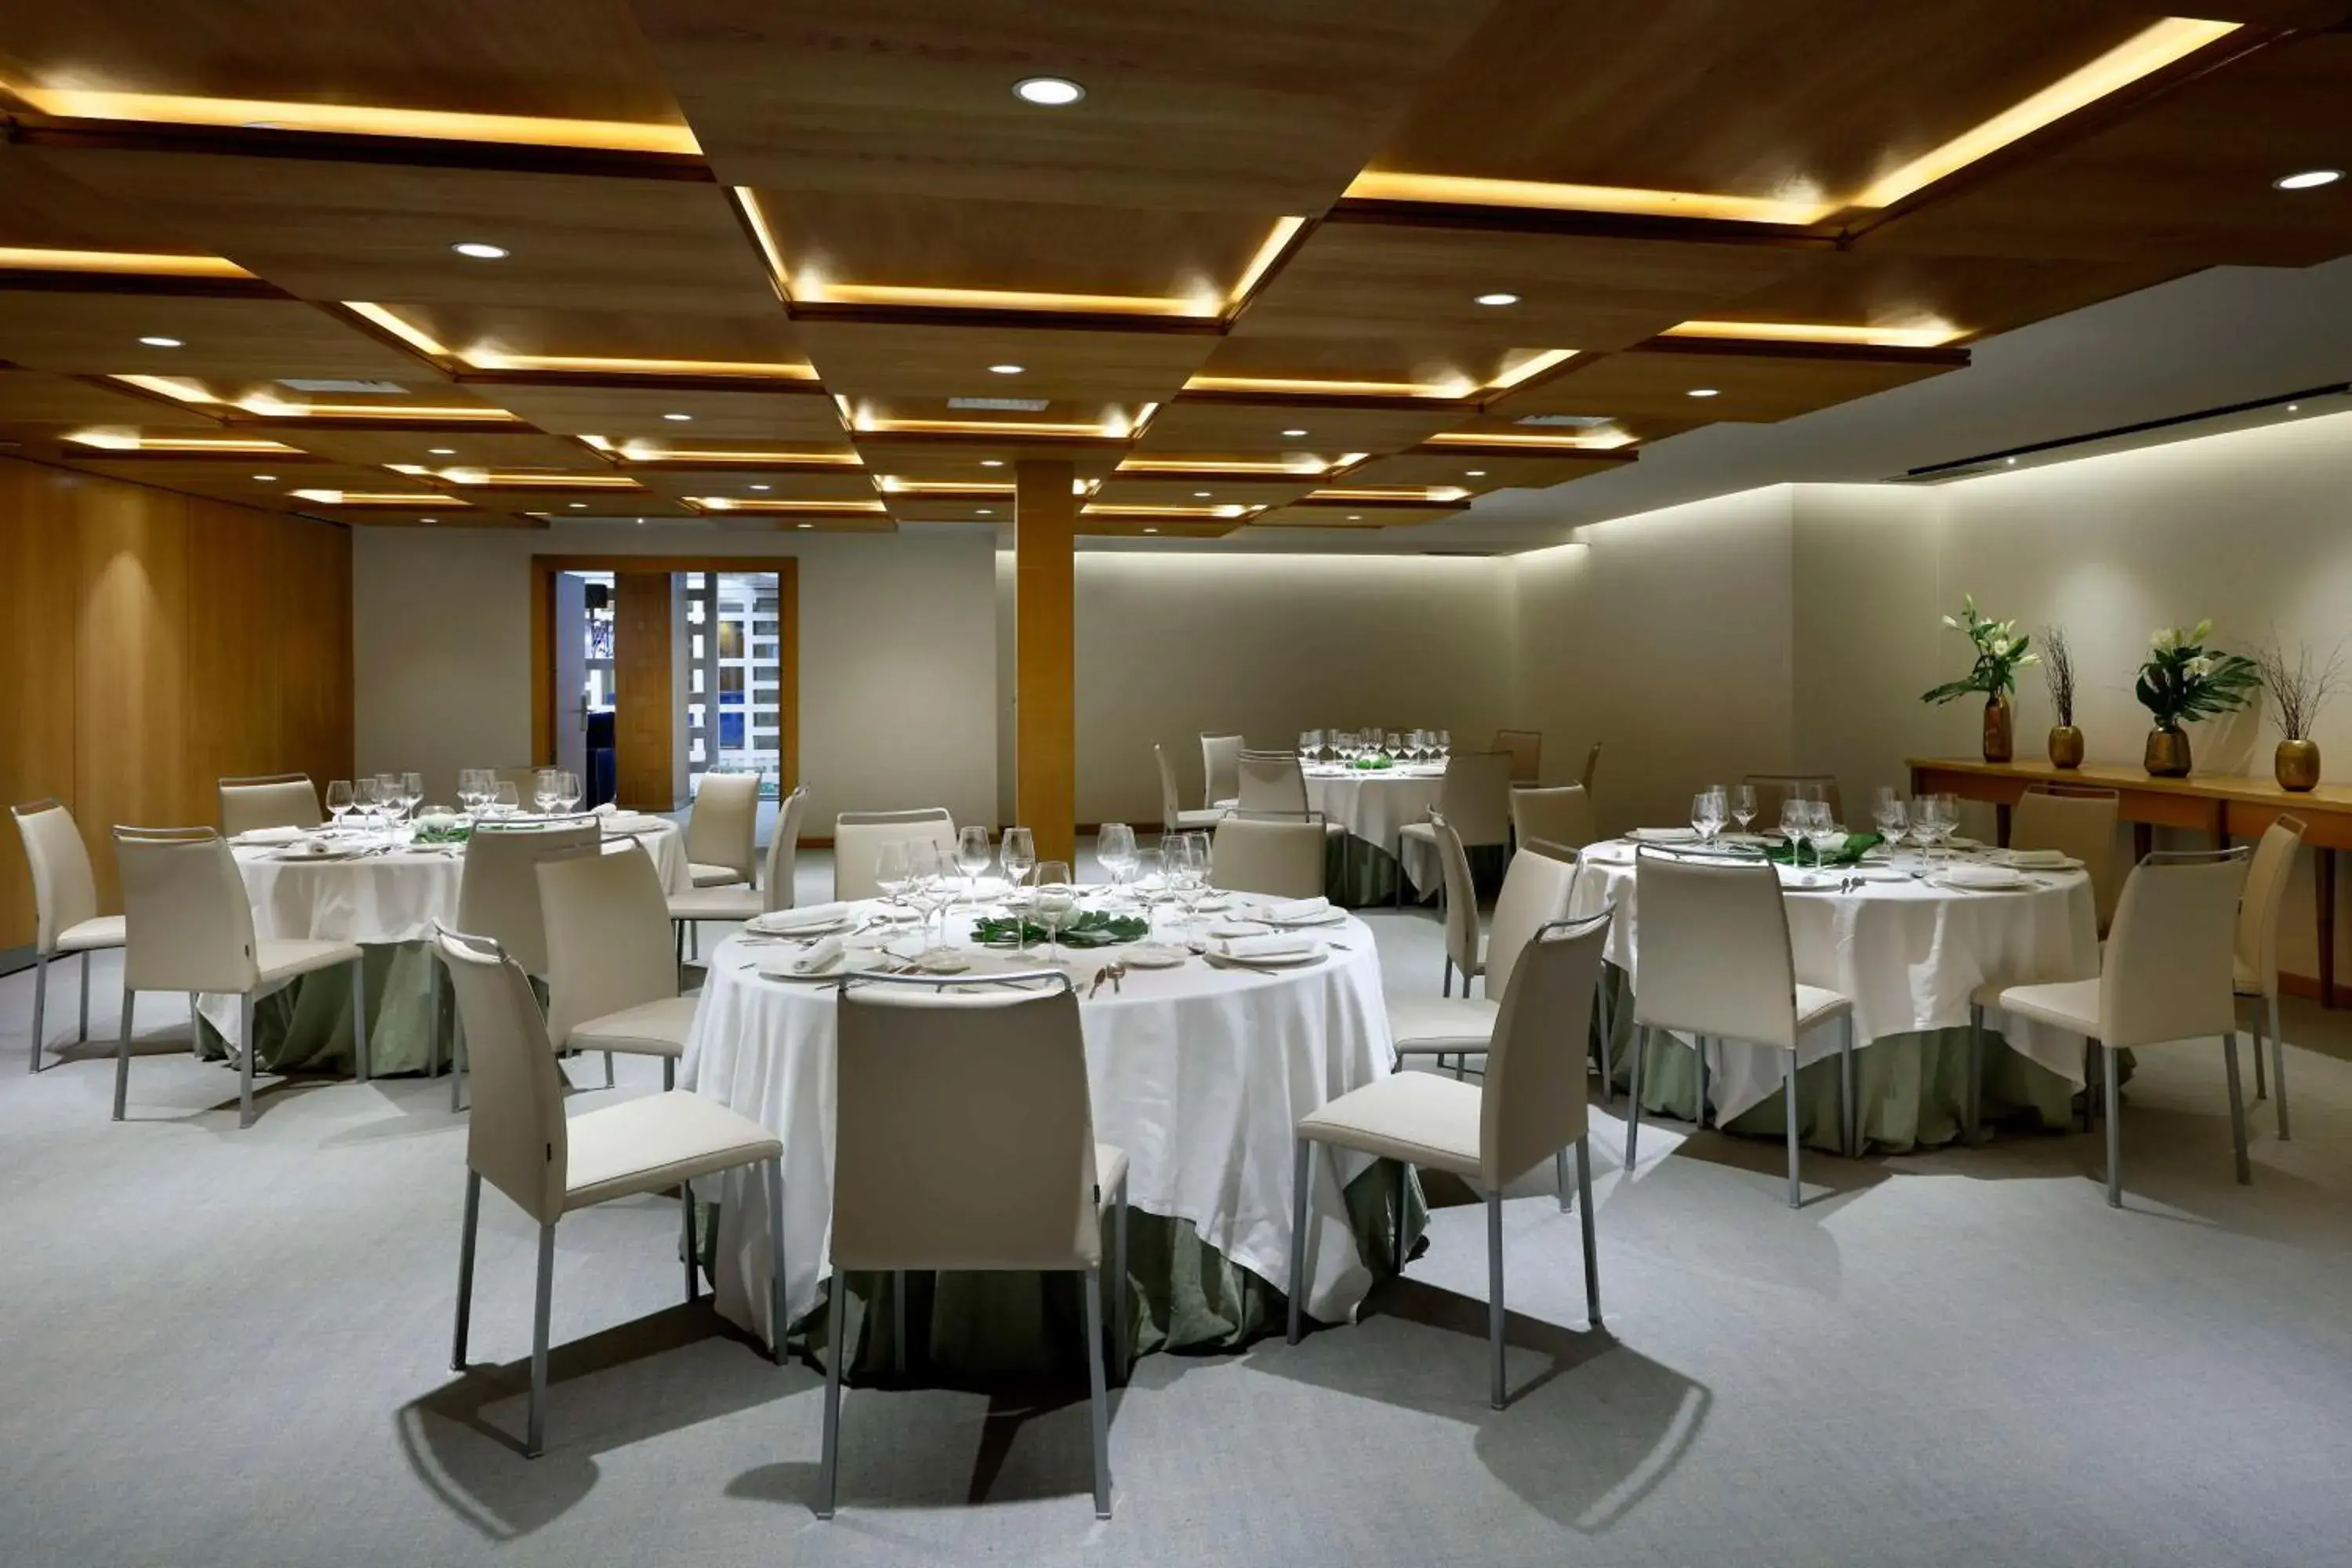 Meeting/conference room, Banquet Facilities in Hyatt Regency Hesperia Madrid